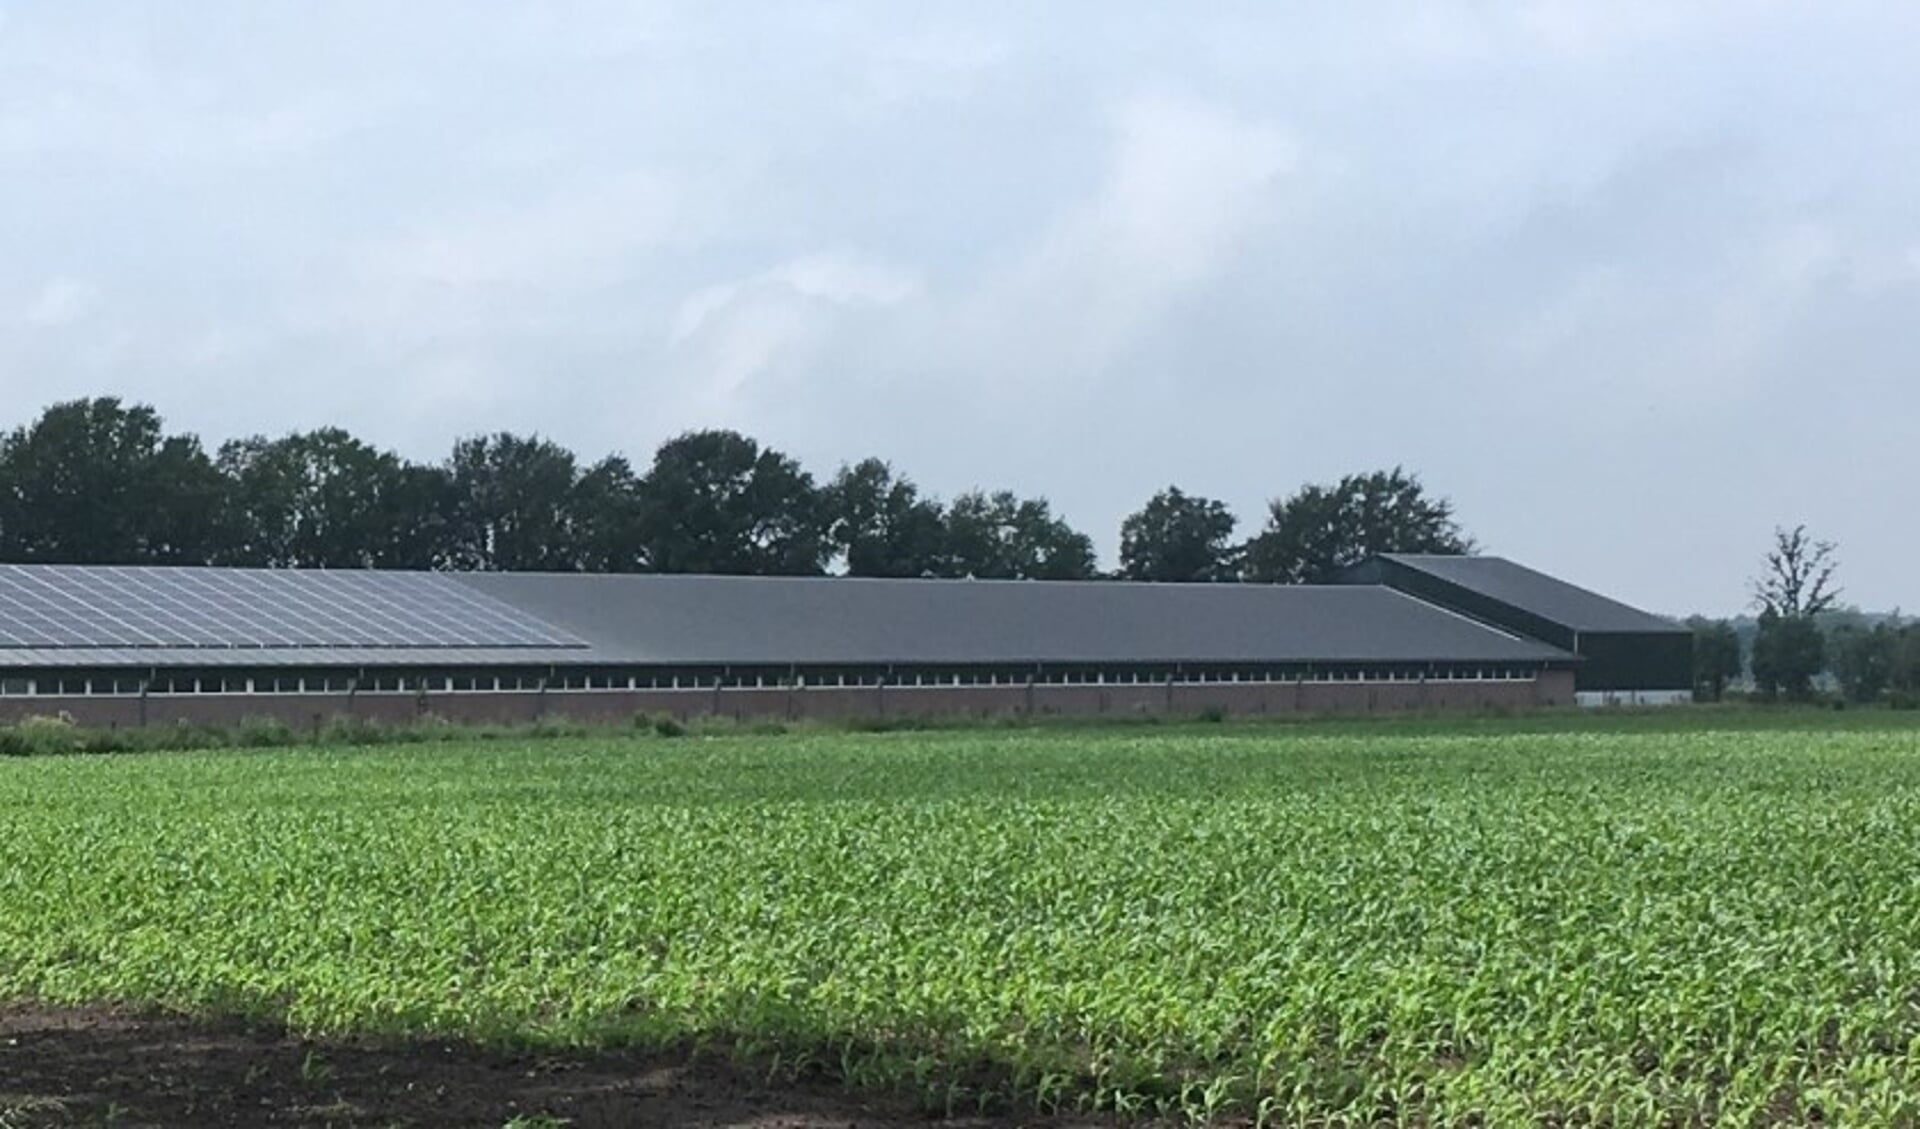 Op het dak van dit varkensbedrijf zouden vele honderden zonnepanelen komen te liggen.